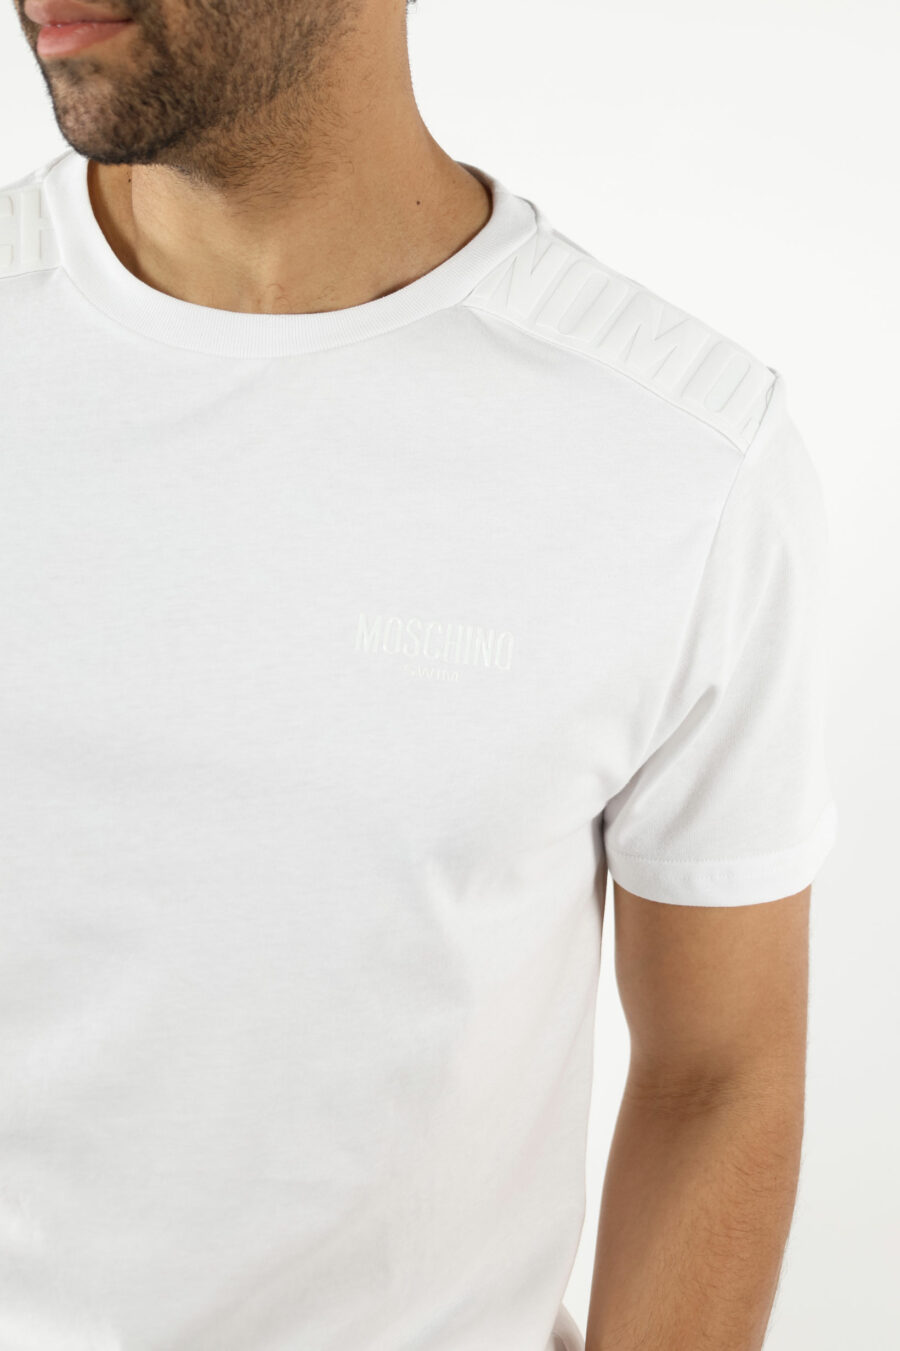 T-shirt blanc avec logo en caoutchouc monochrome sur les épaules - 111079